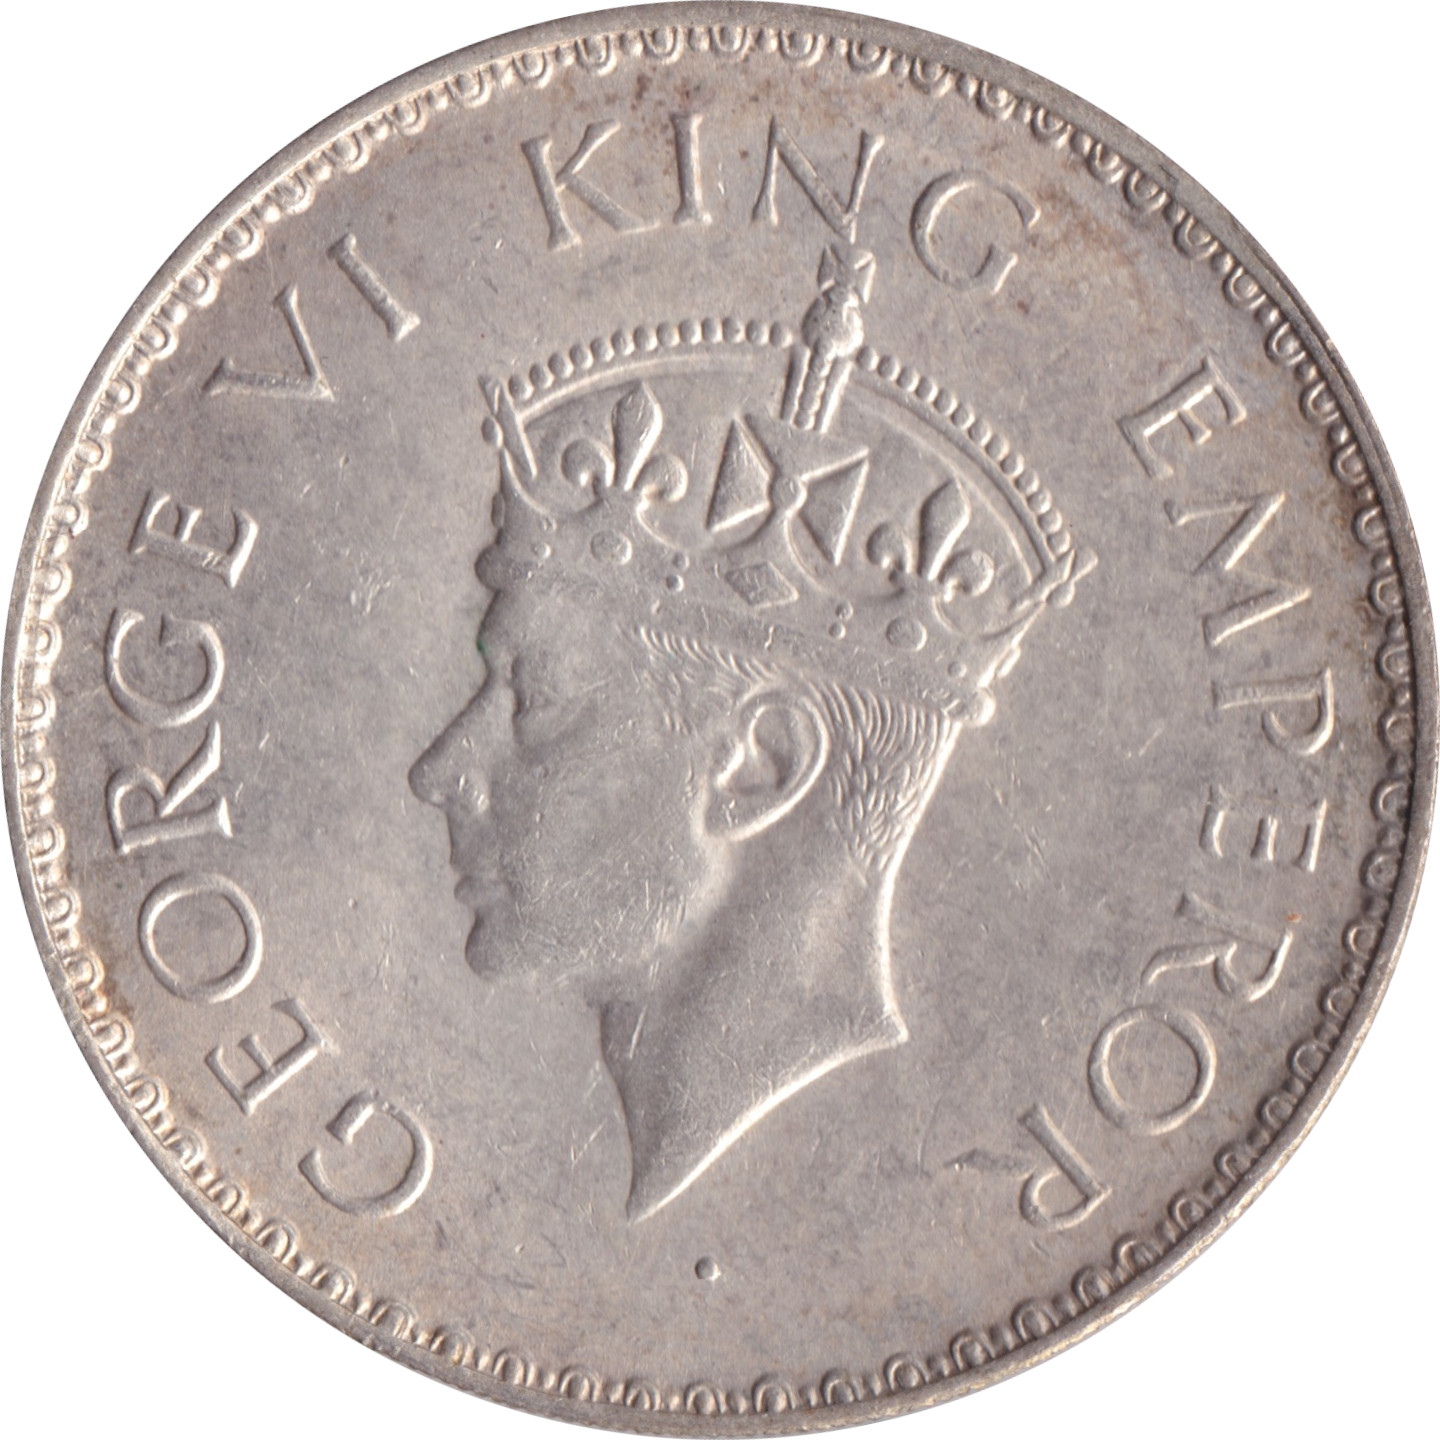 1 rupee - George VI - Fleur